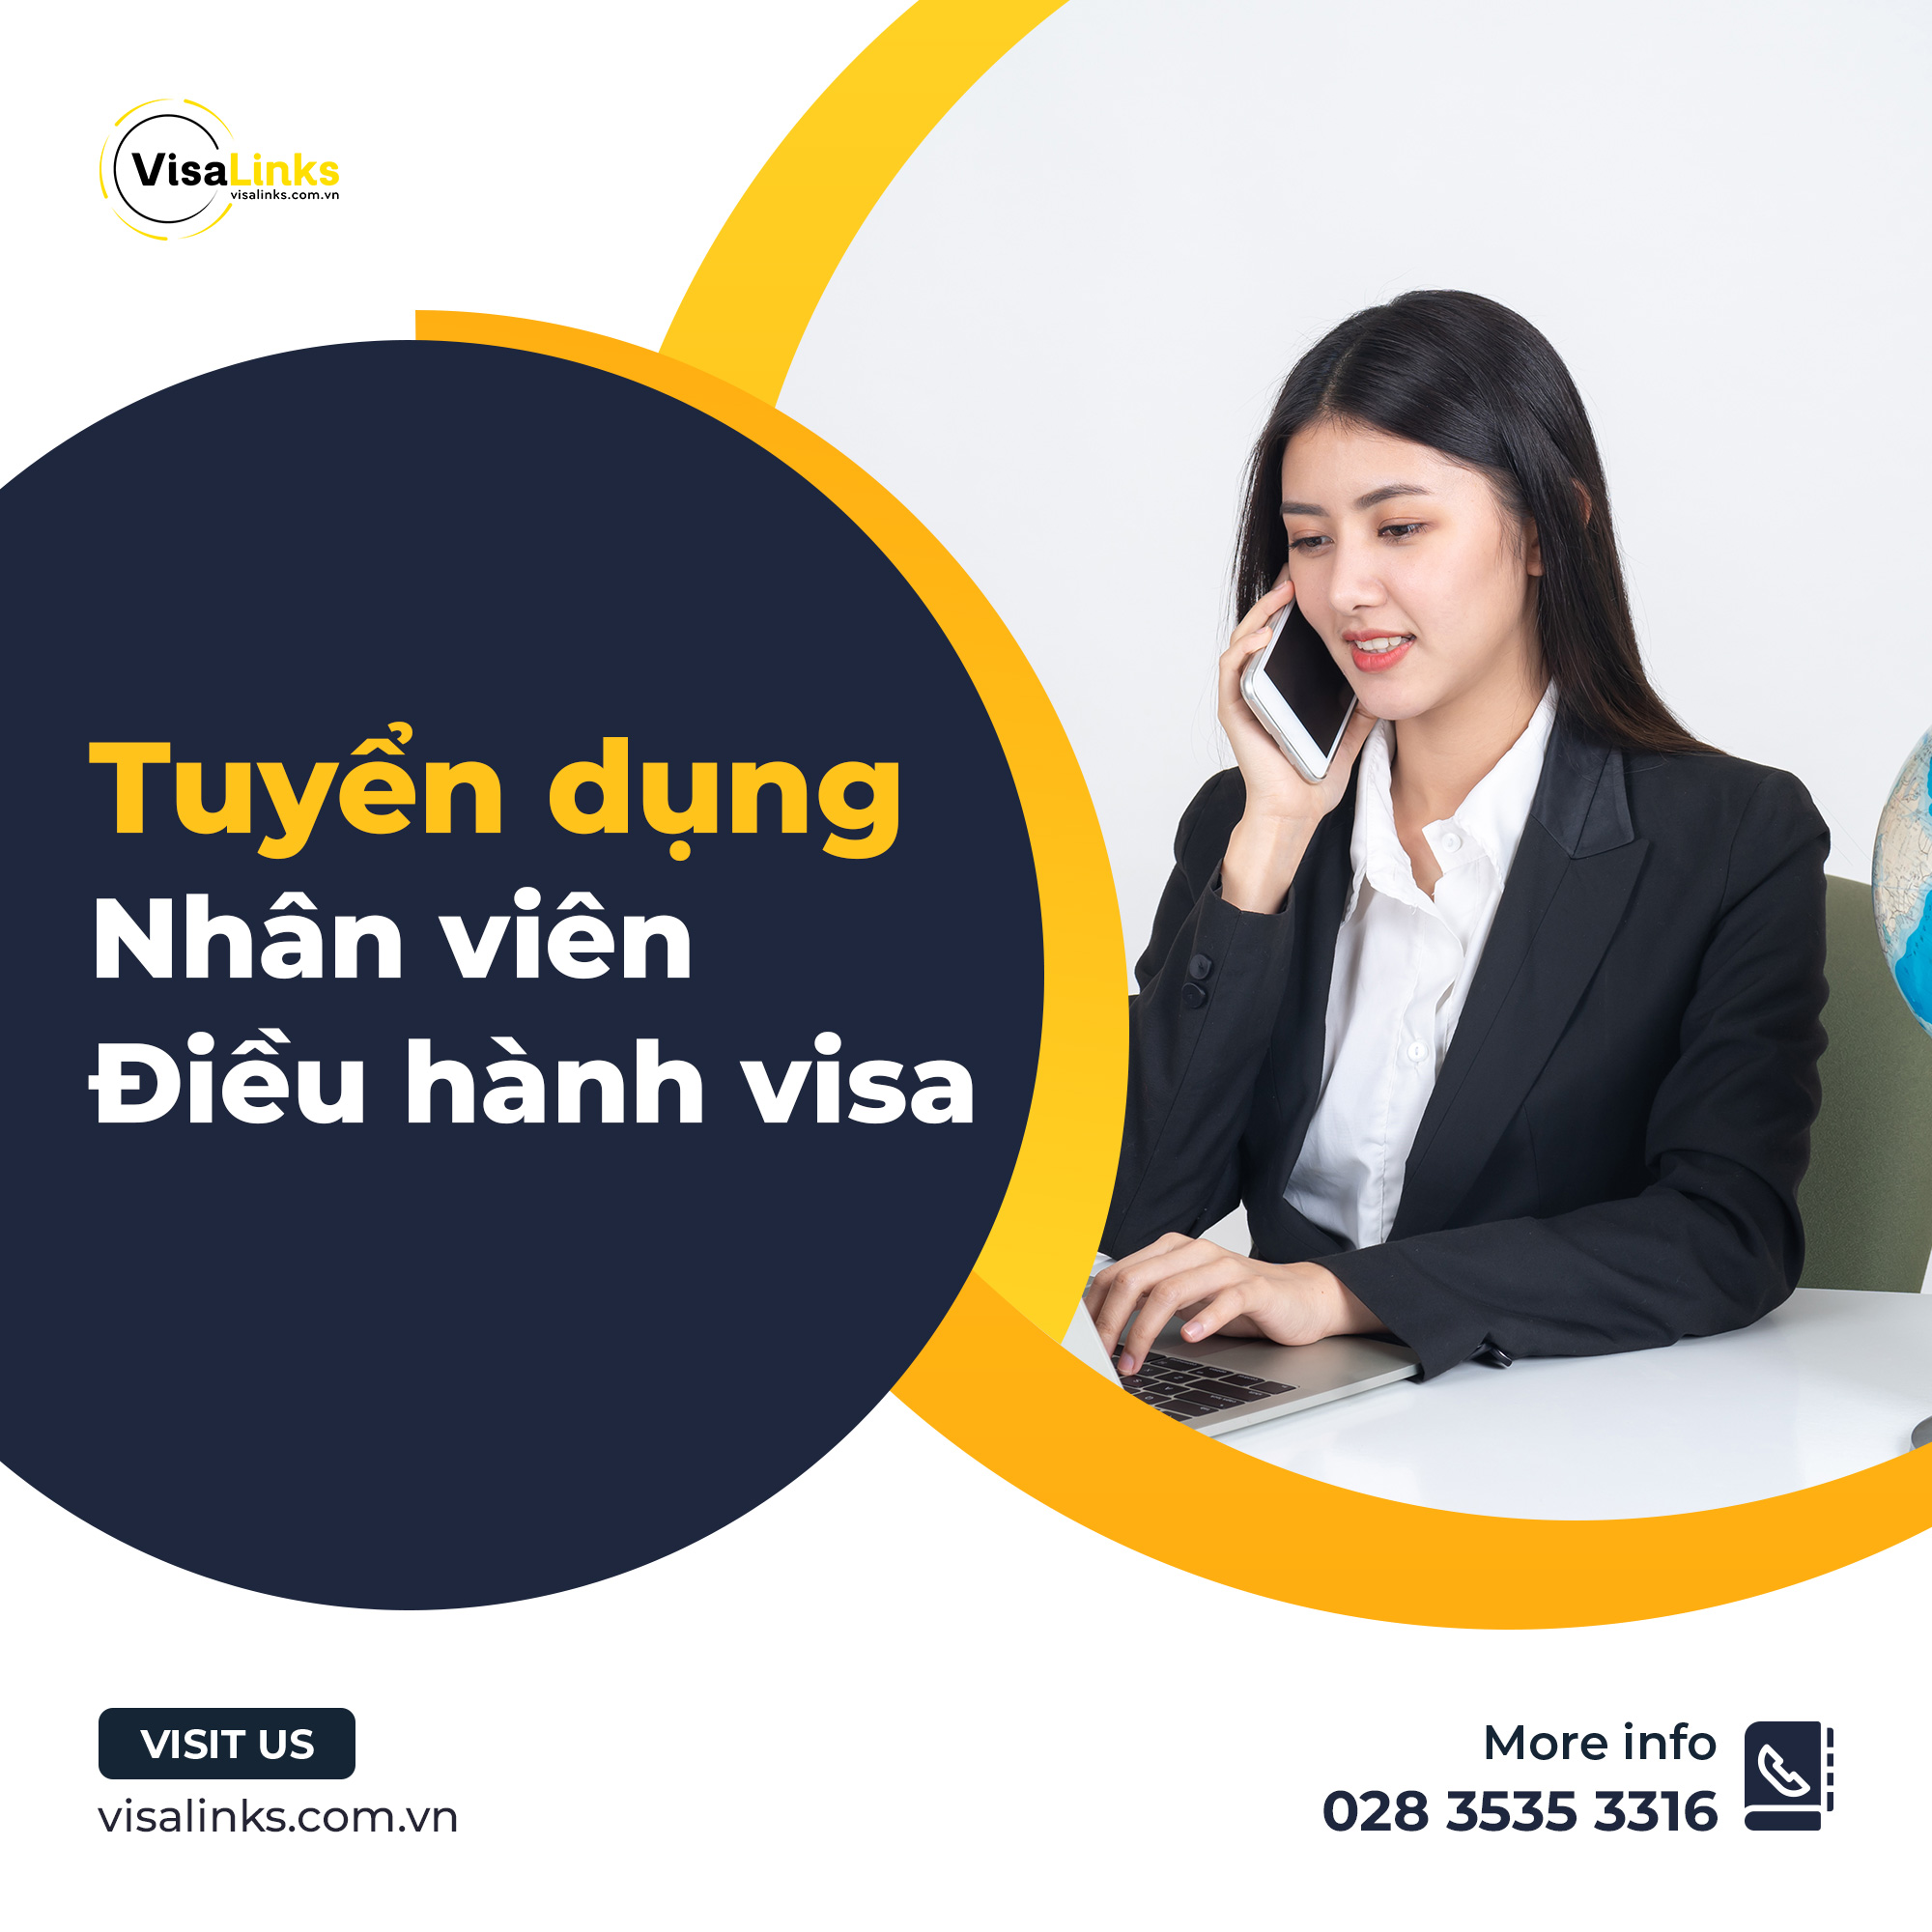 visalinks tuyển dụng nhân viên điều hành visa